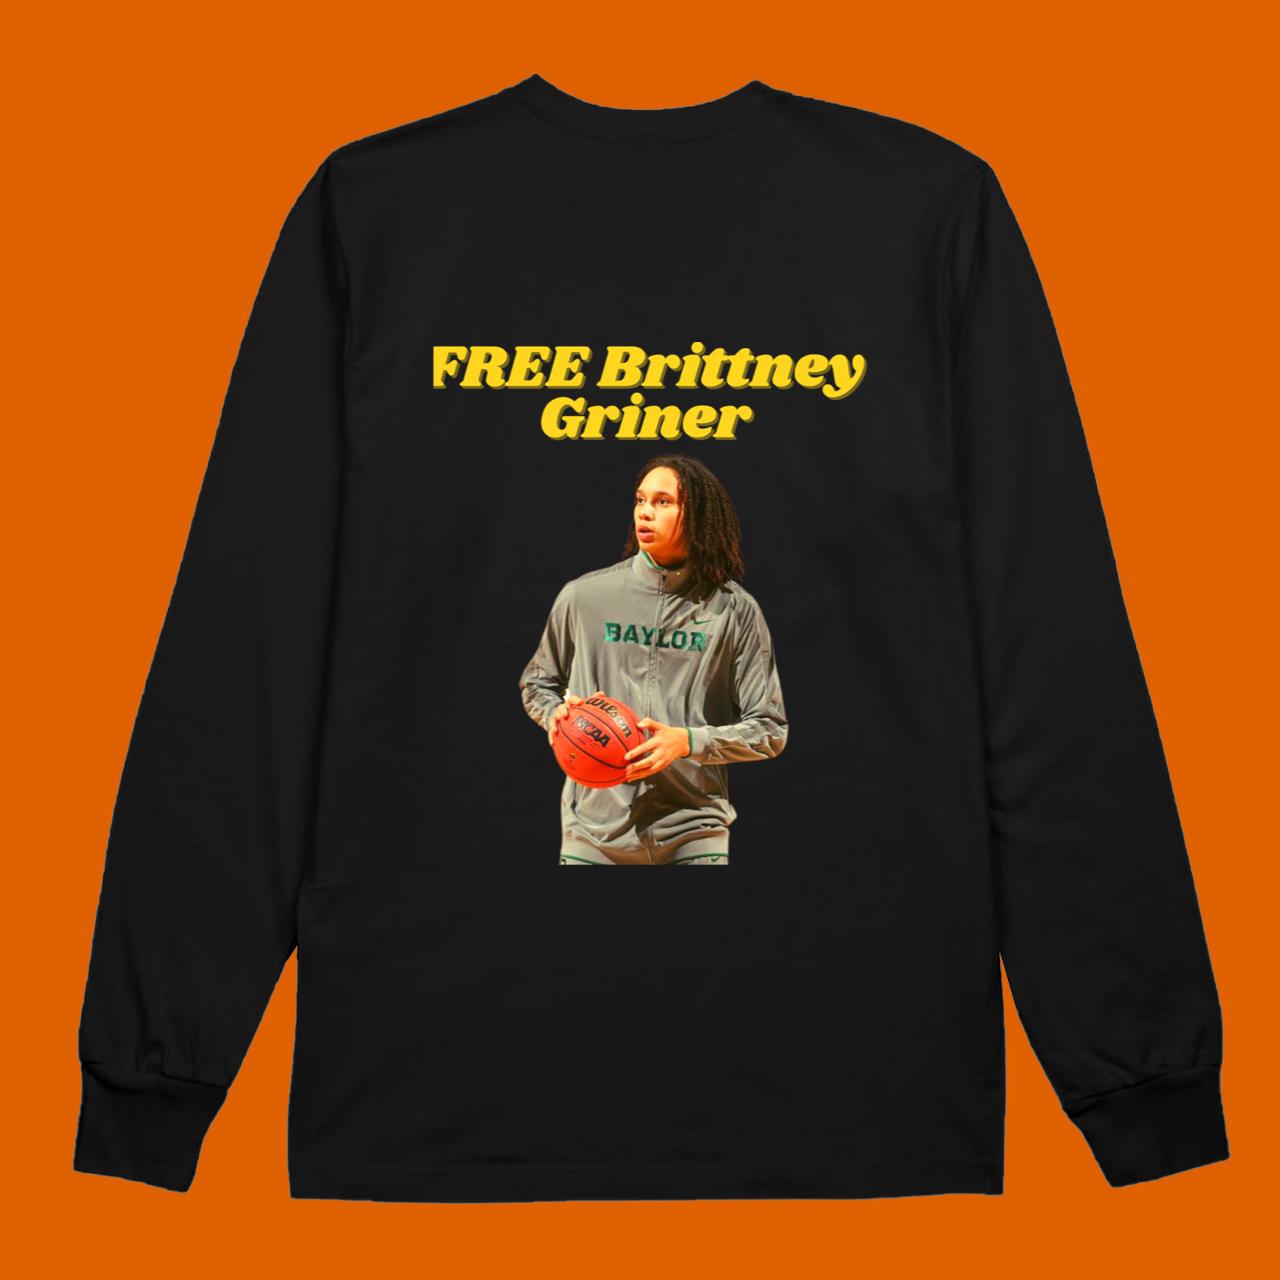 Free Brittney Griner Essential Sticker Classic T-Shirt